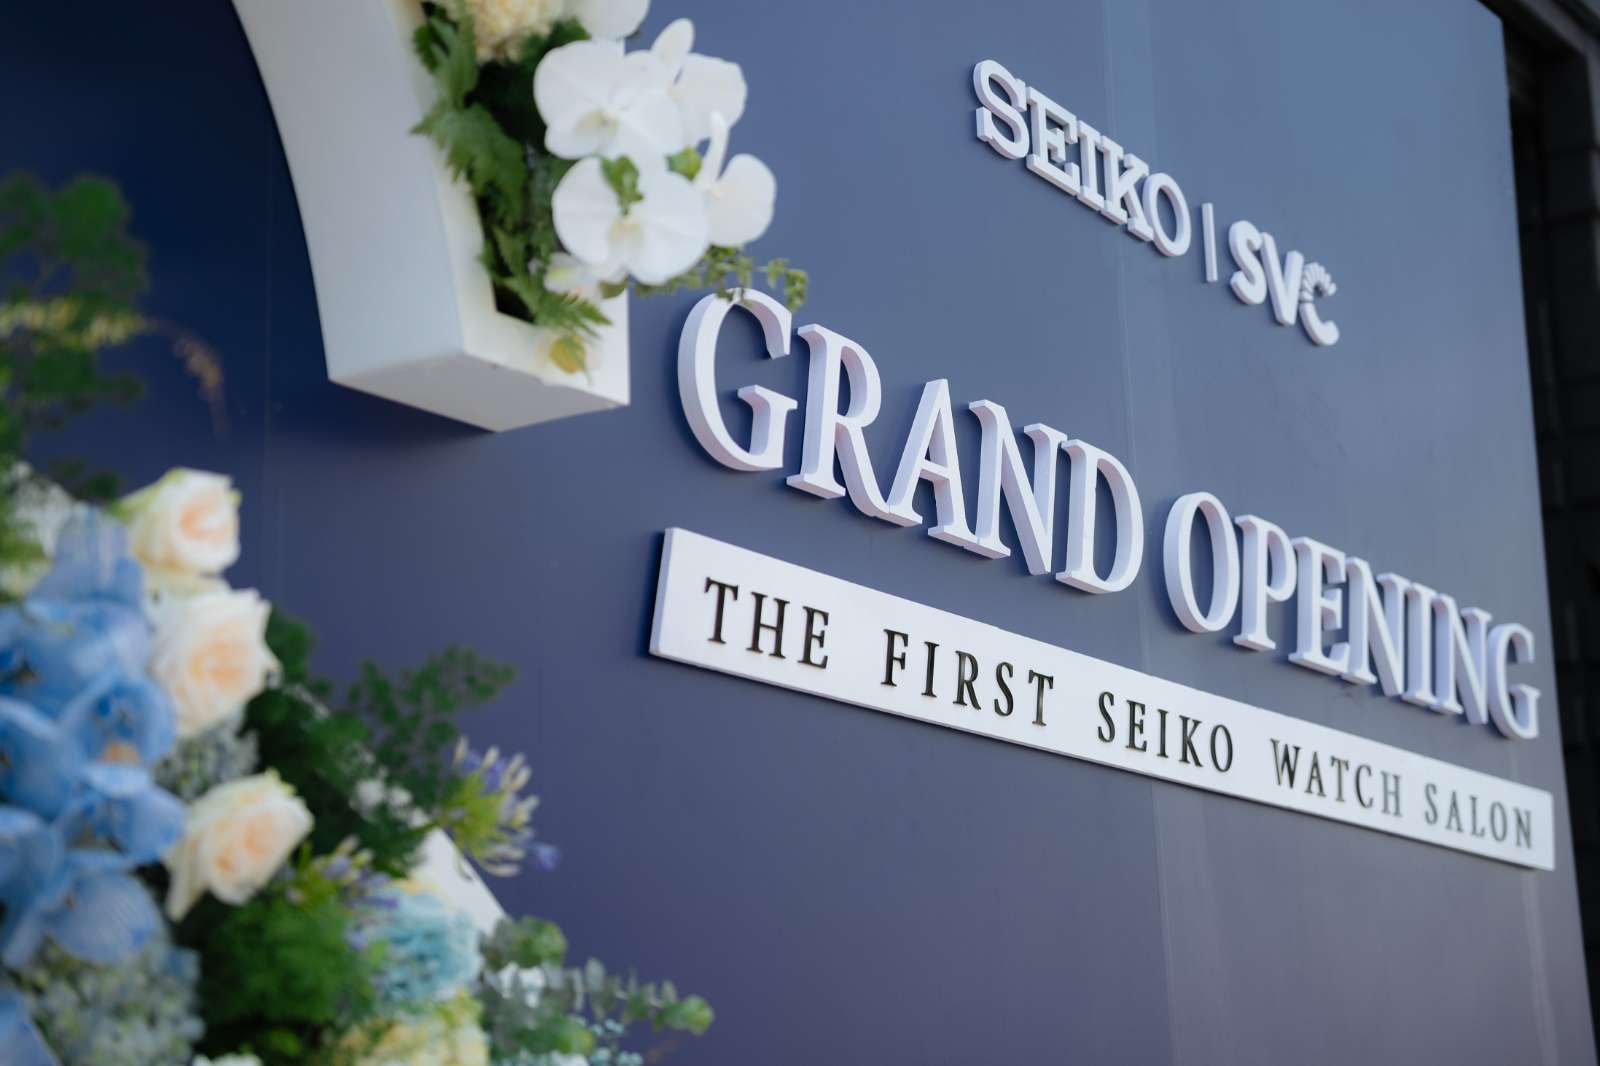 Seiko Watch Salon Grand Opening